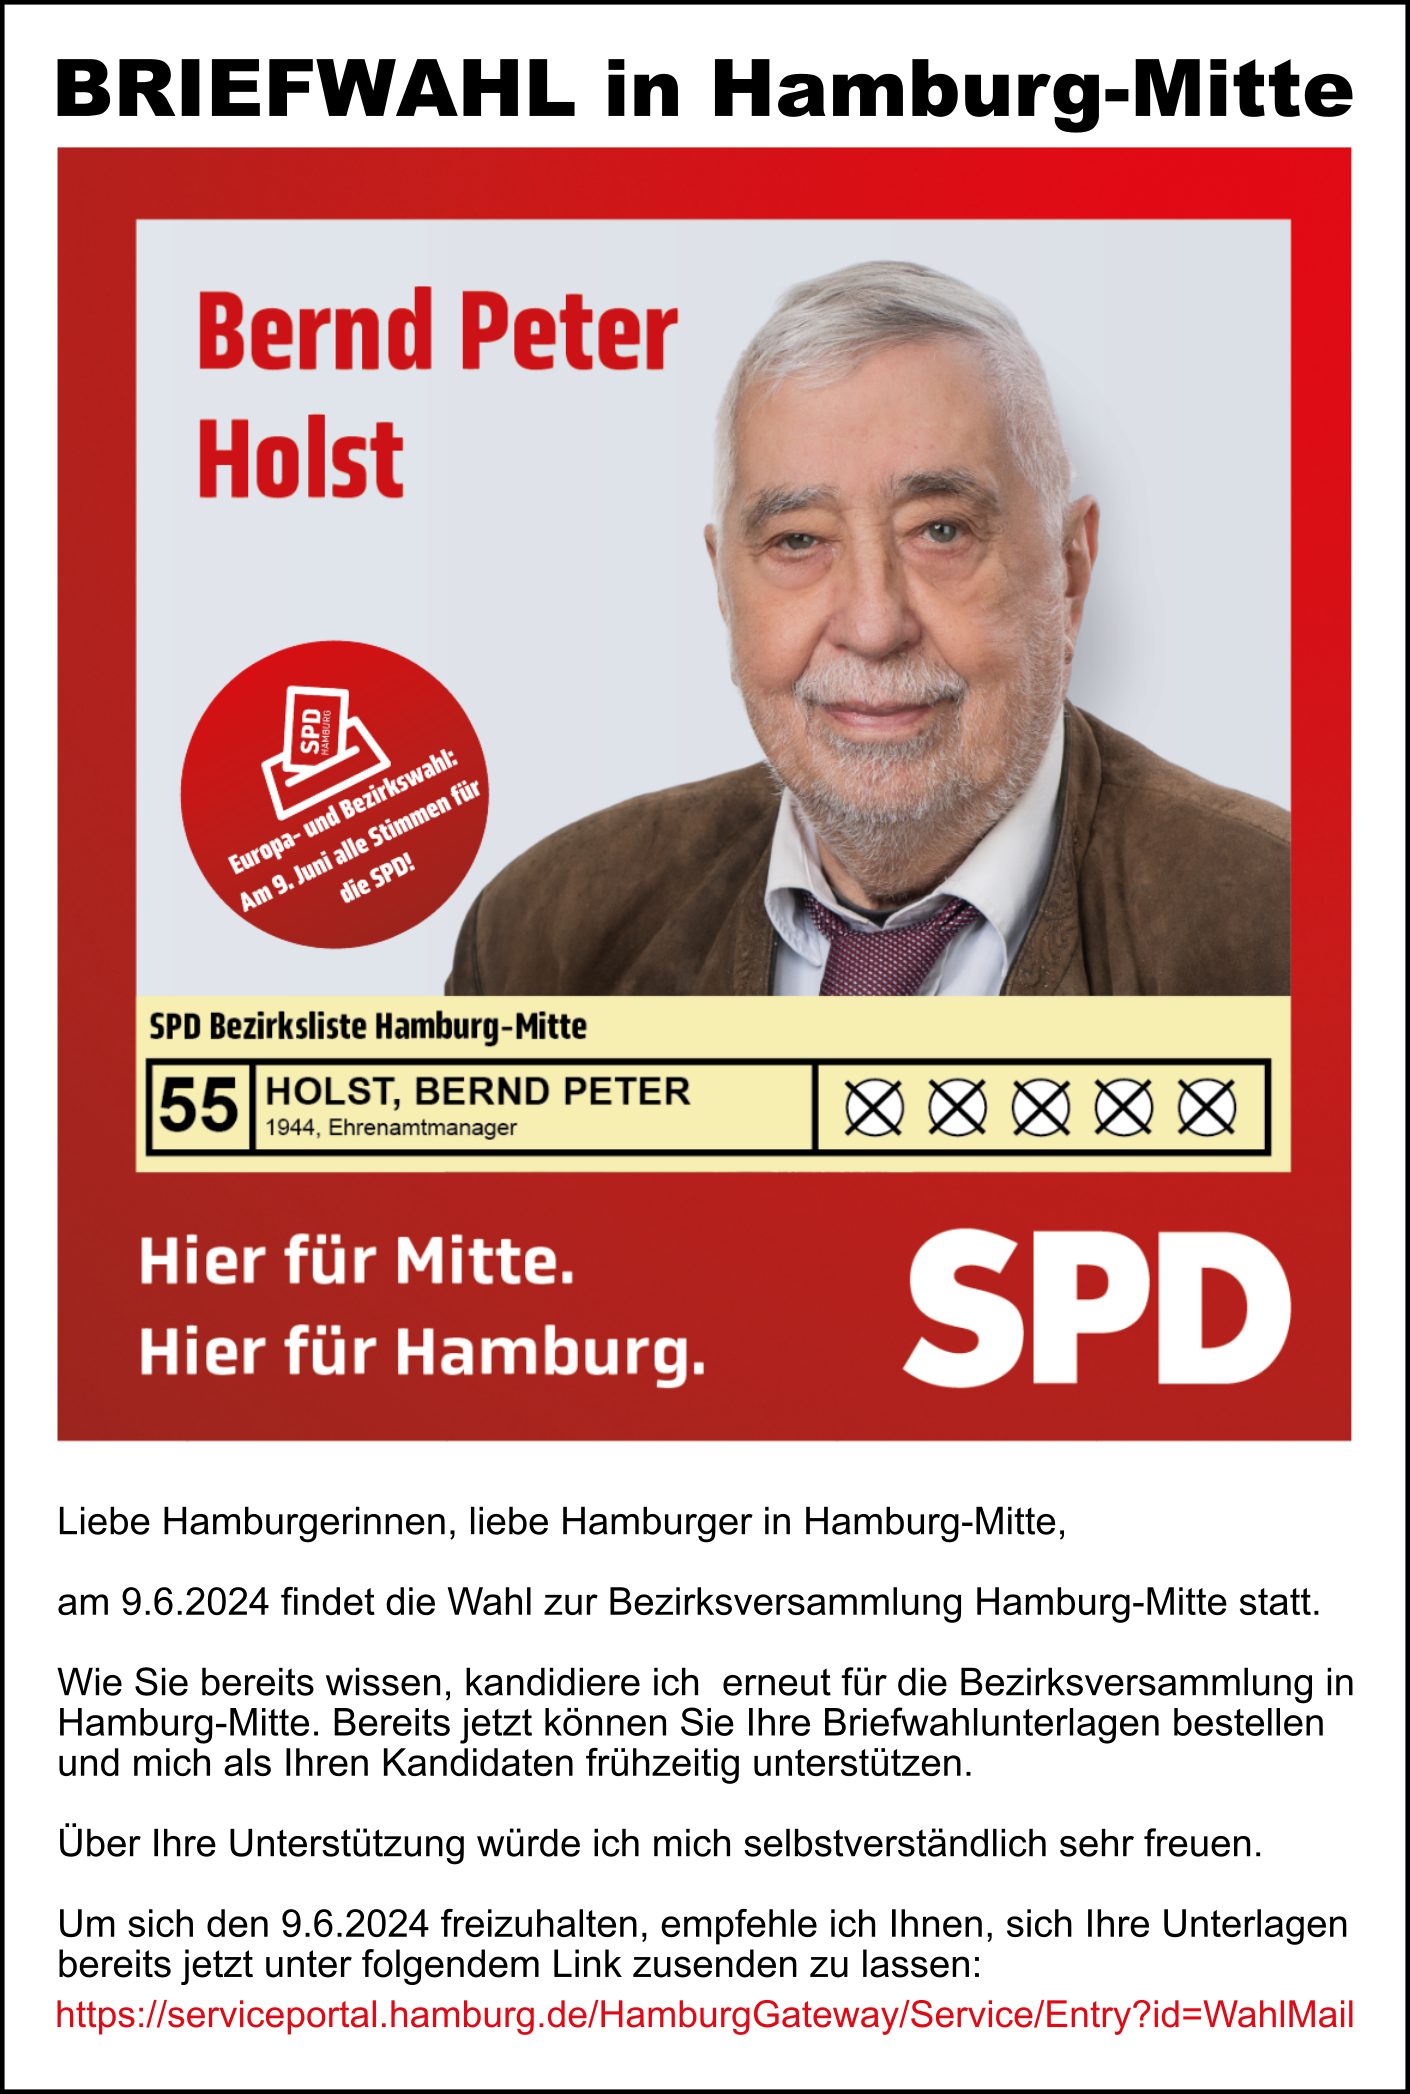 Bernd P. Holst Listenplatz 55 Briefwahl Hamburg-Mitte 2024